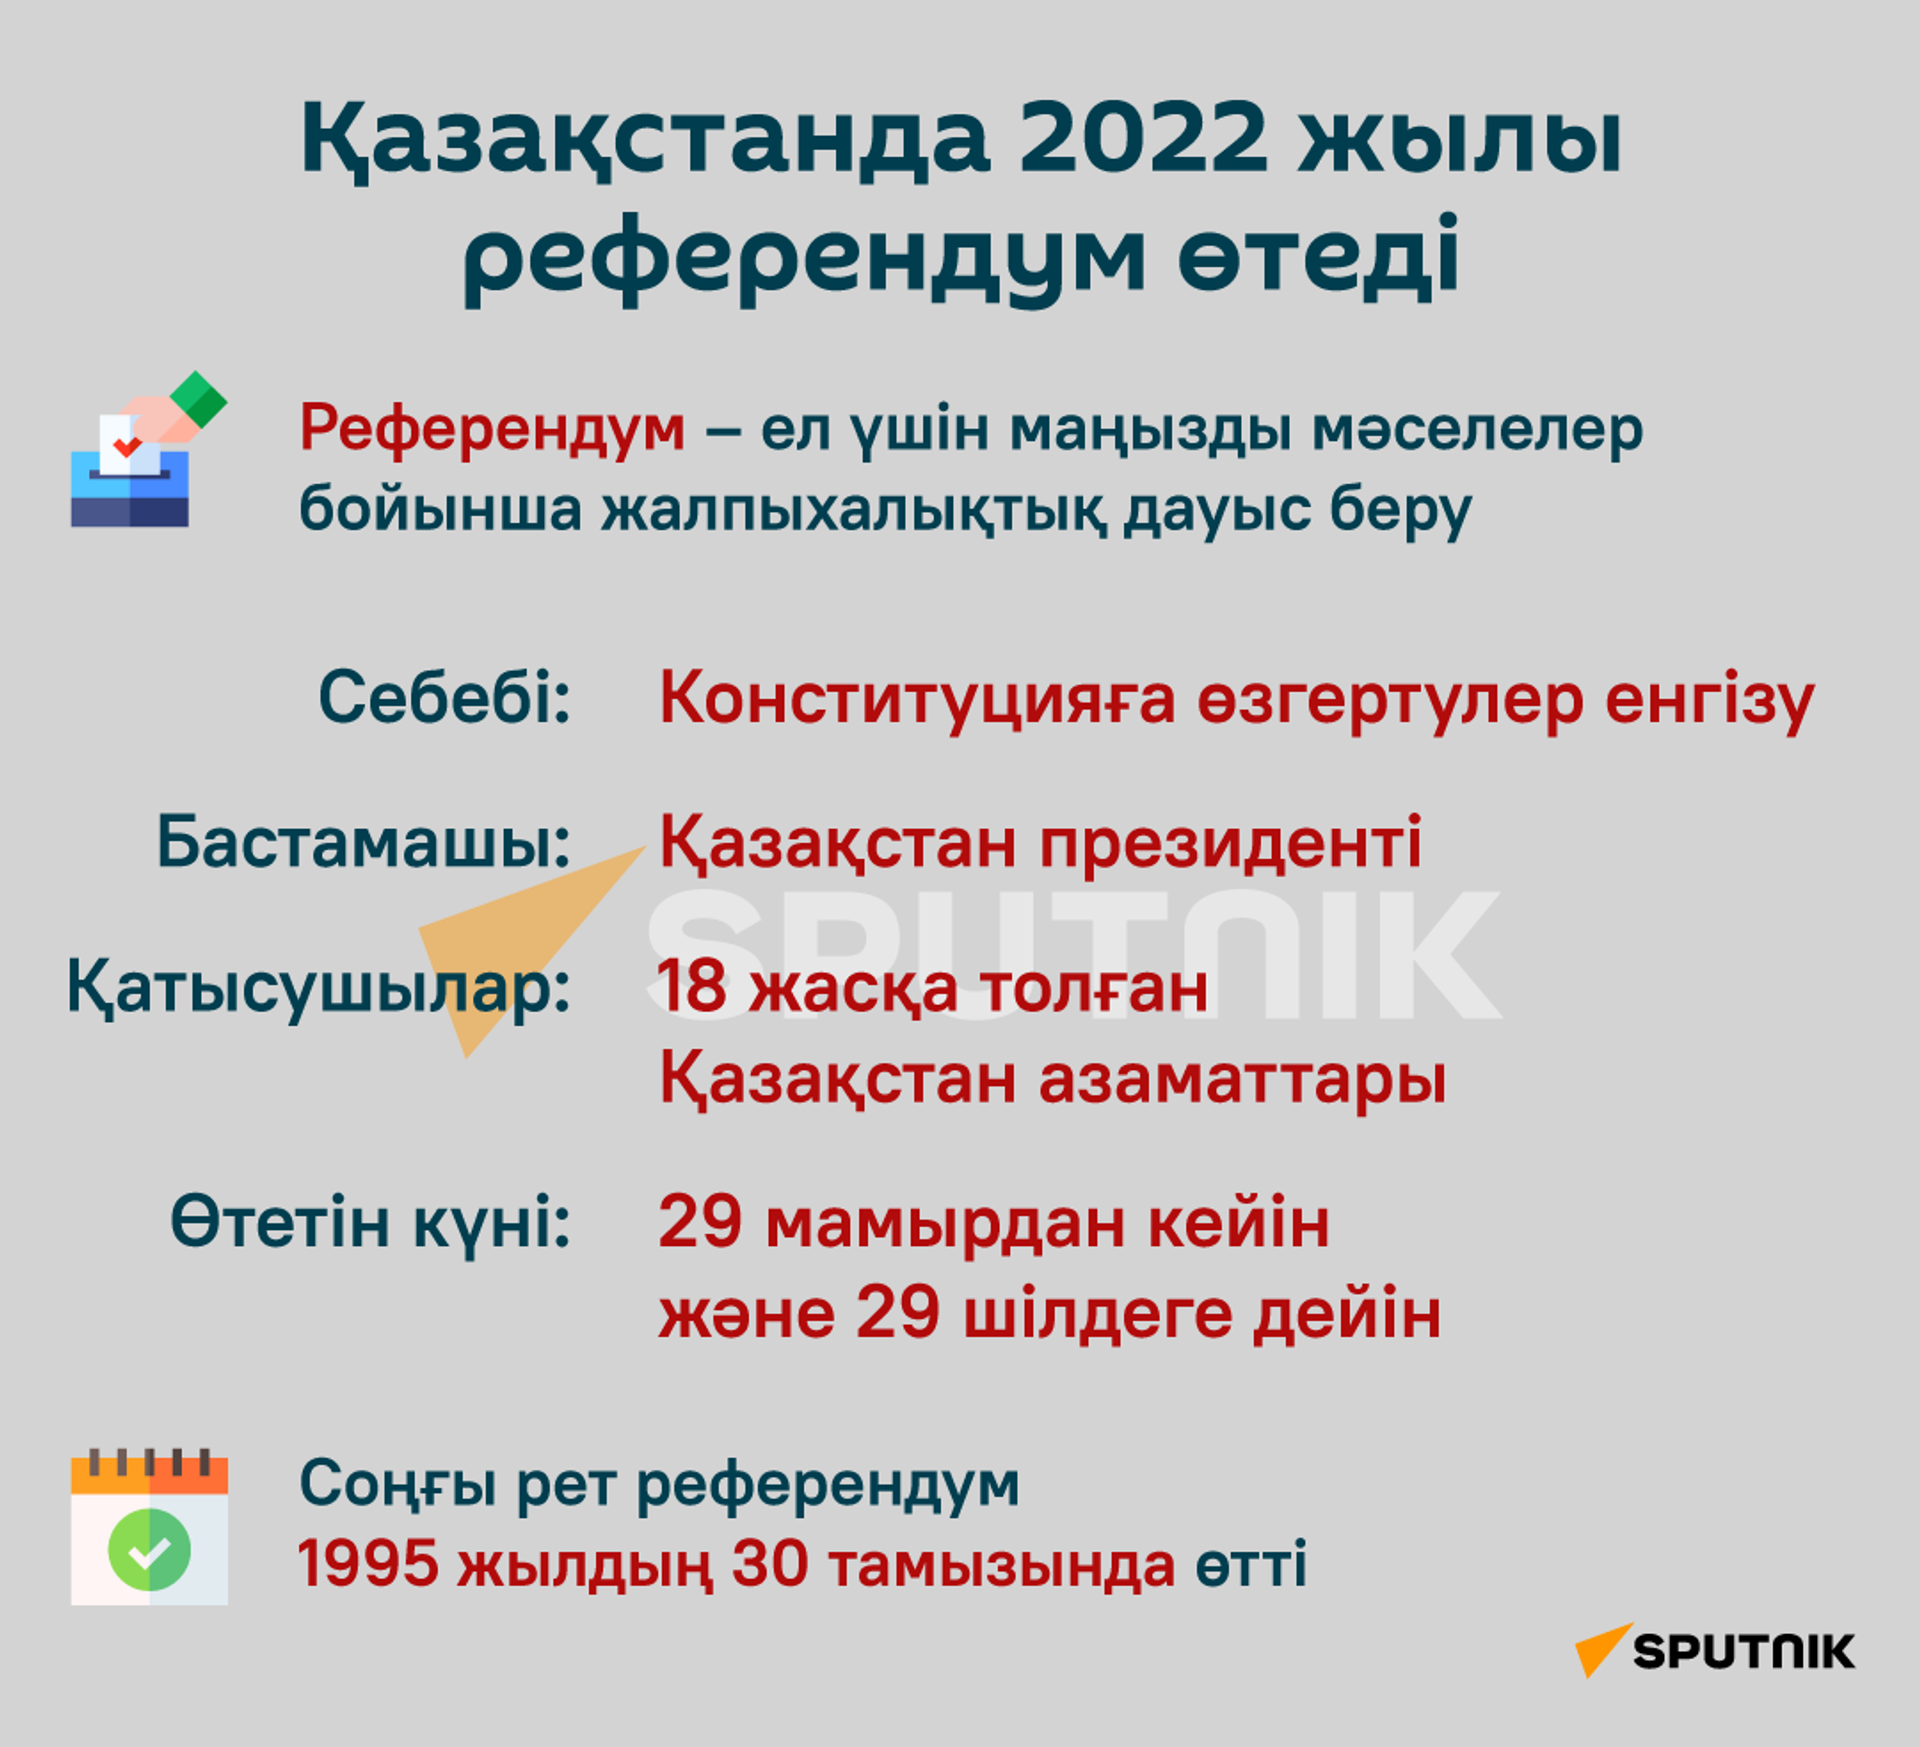 Қазақстанда 2022 жылы референдум өтеді  - Sputnik Қазақстан, 1920, 30.04.2022